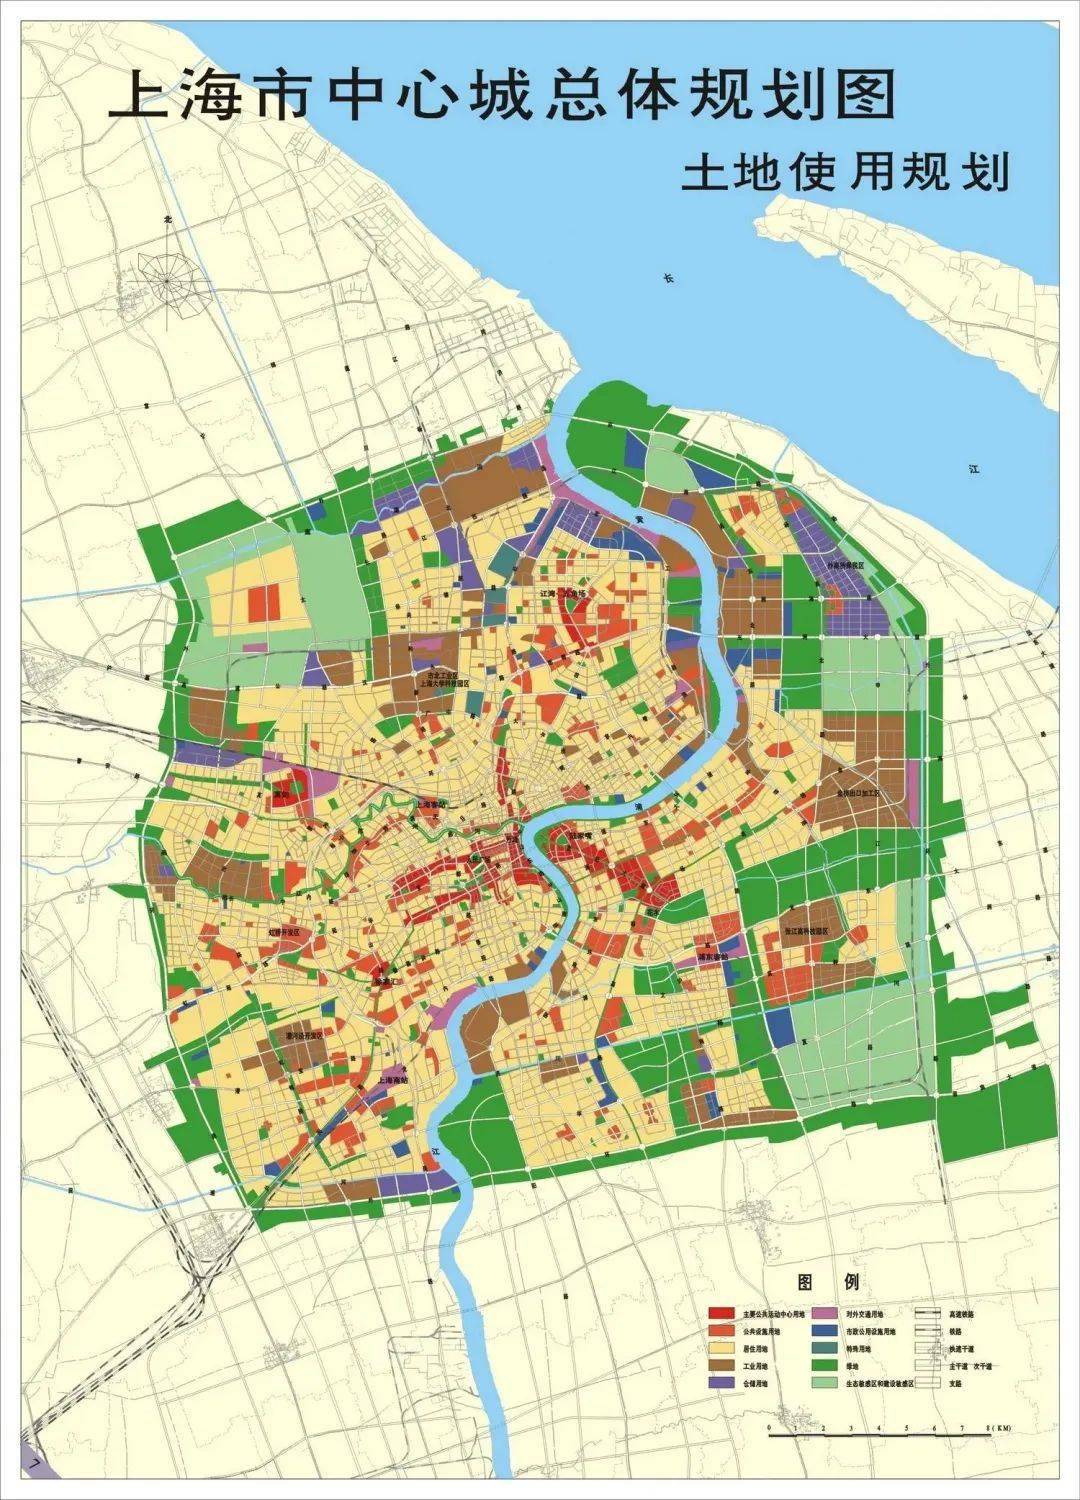 上海市城市总体规划(2017